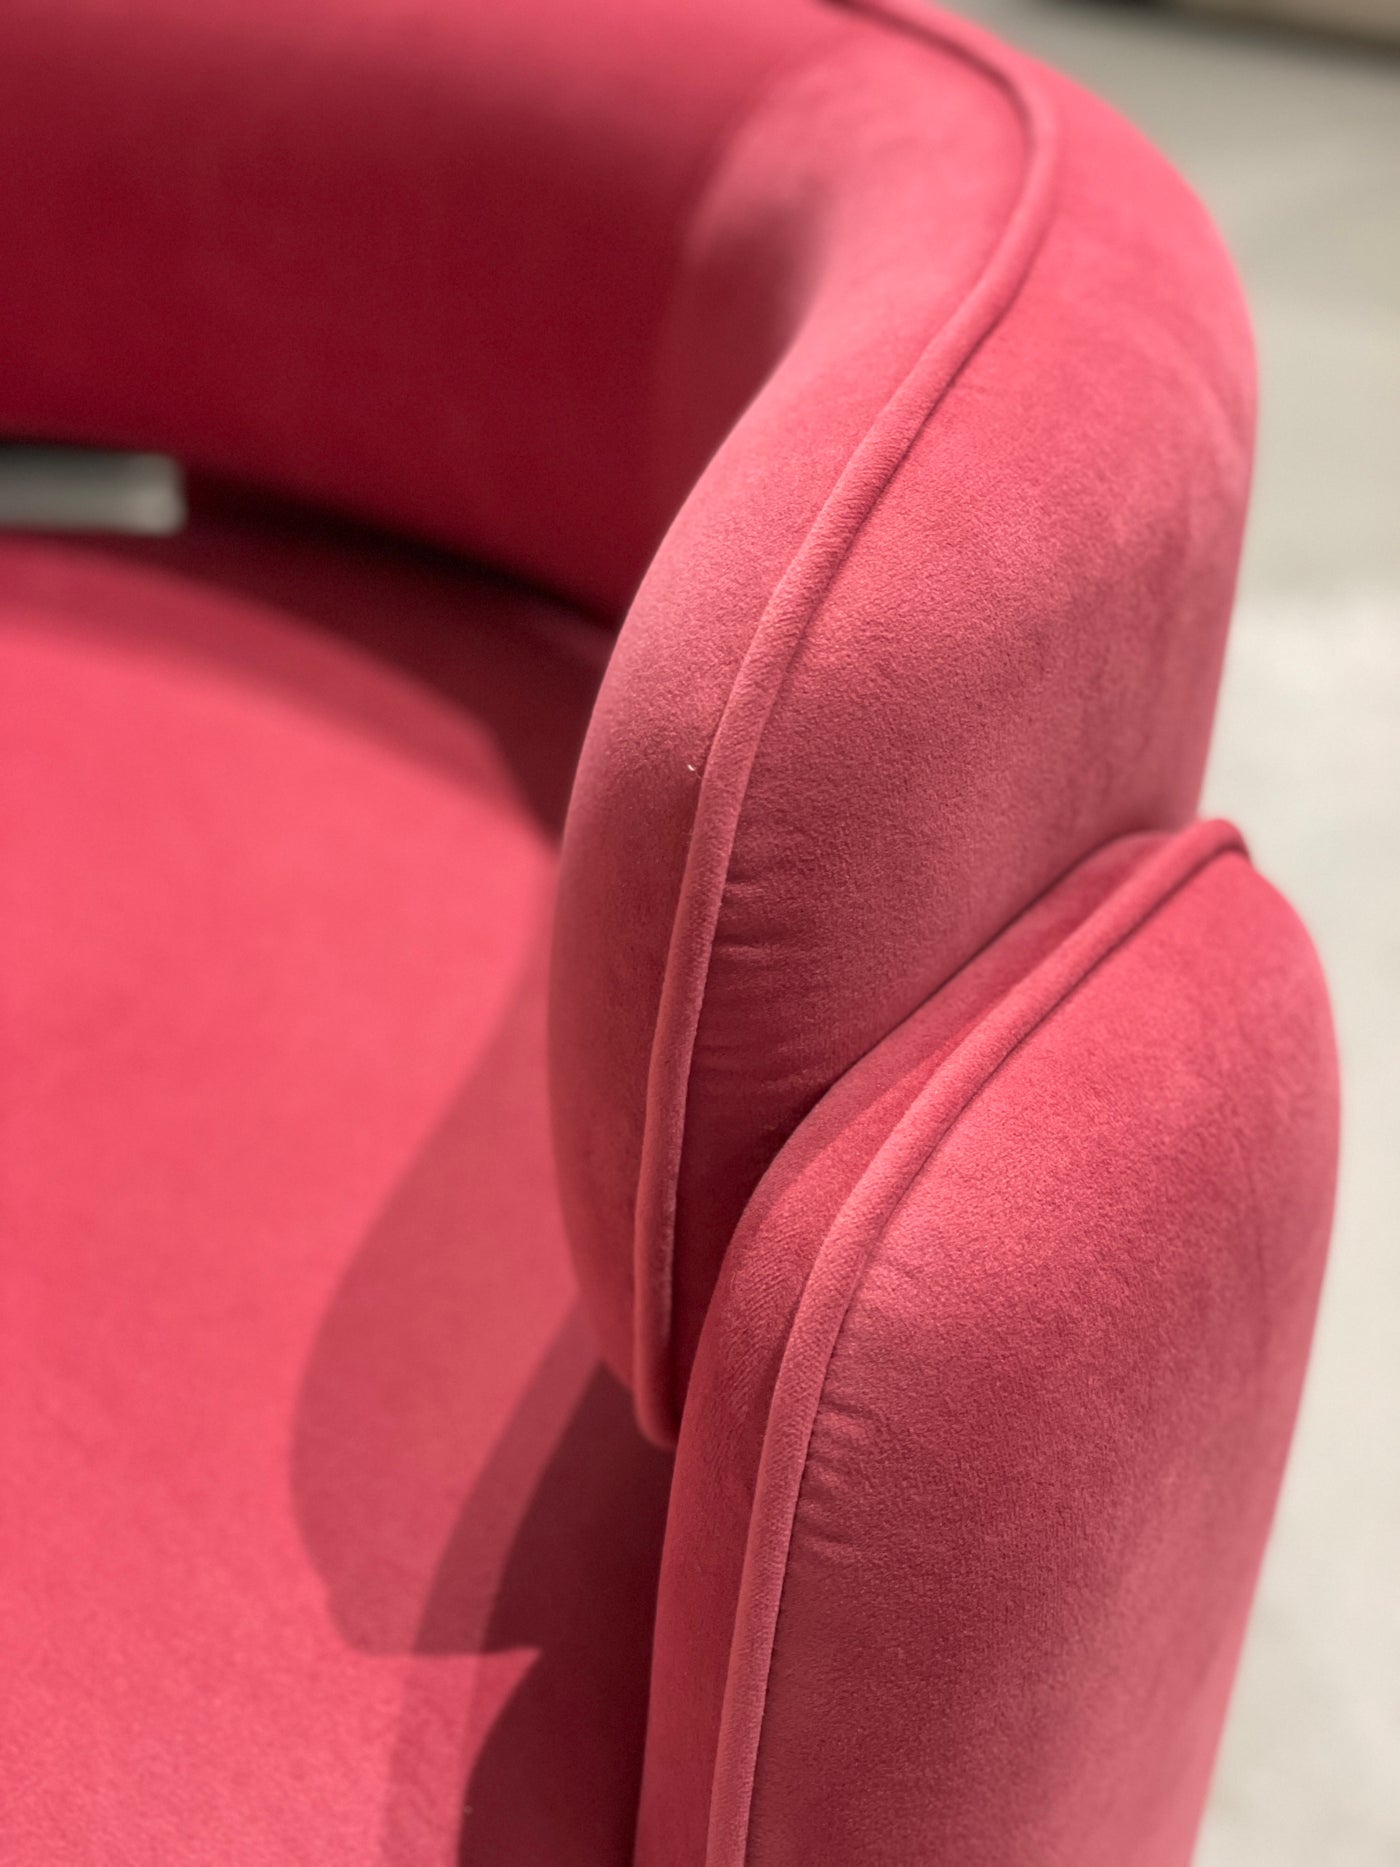 Chilli Chair Coral Red - Future Classics Furniture